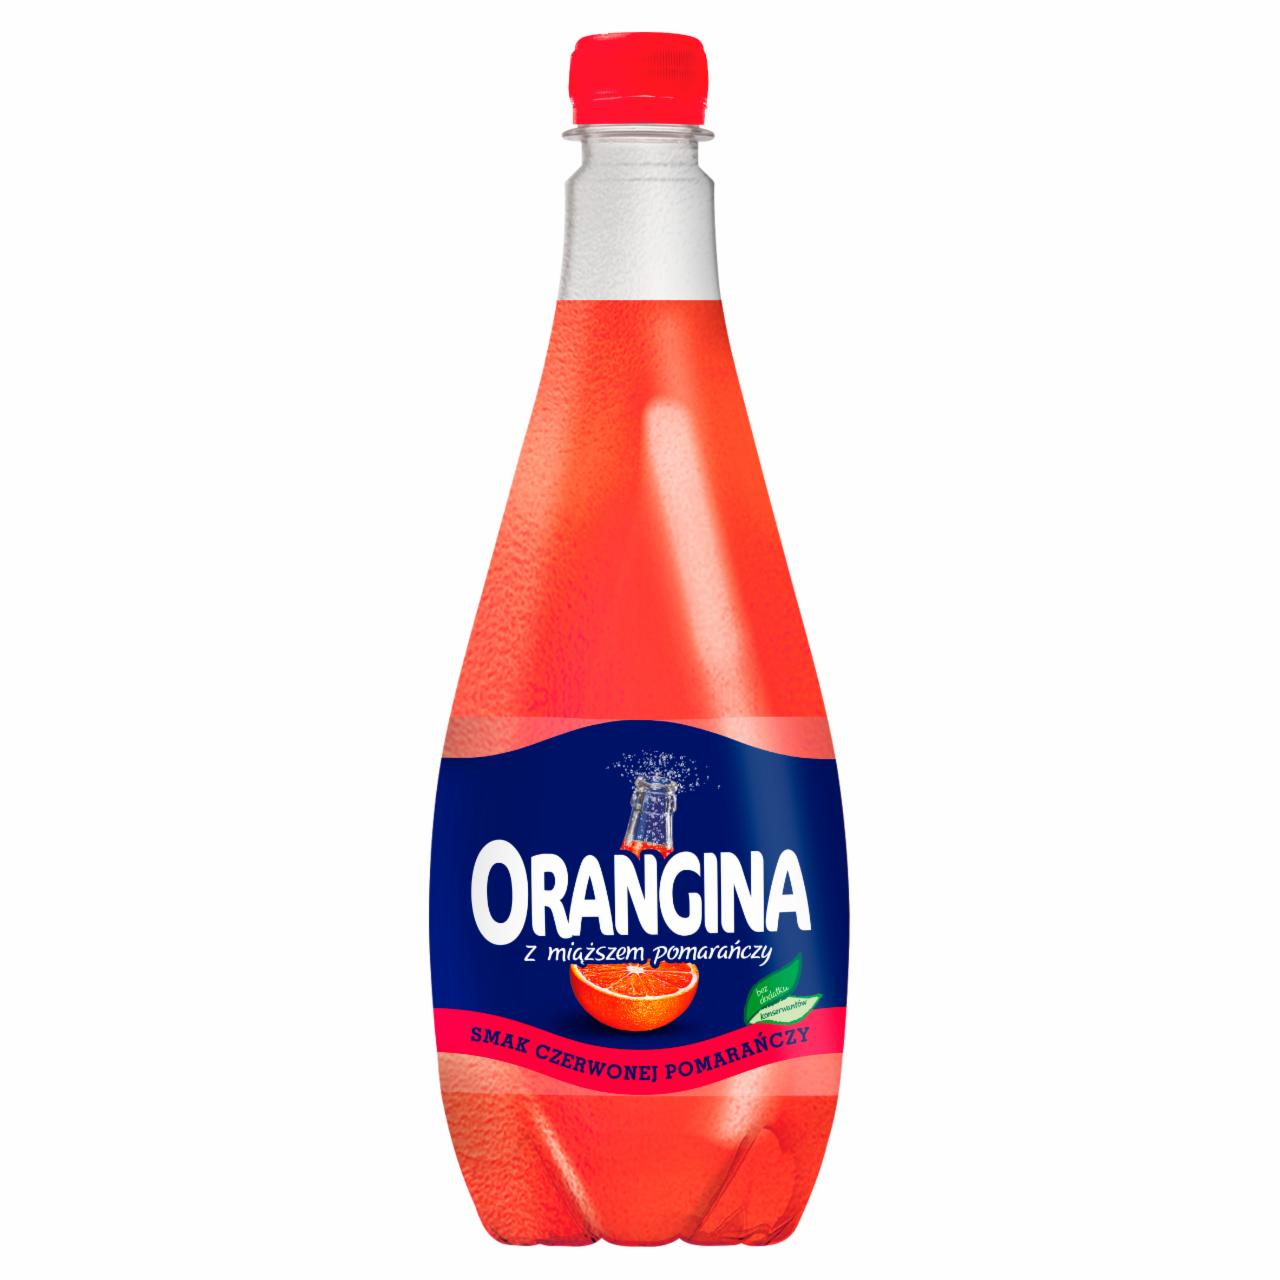 Zdjęcia - Orangina Original Napój gazowany smak czerwonej pomarańczy 0,9 l